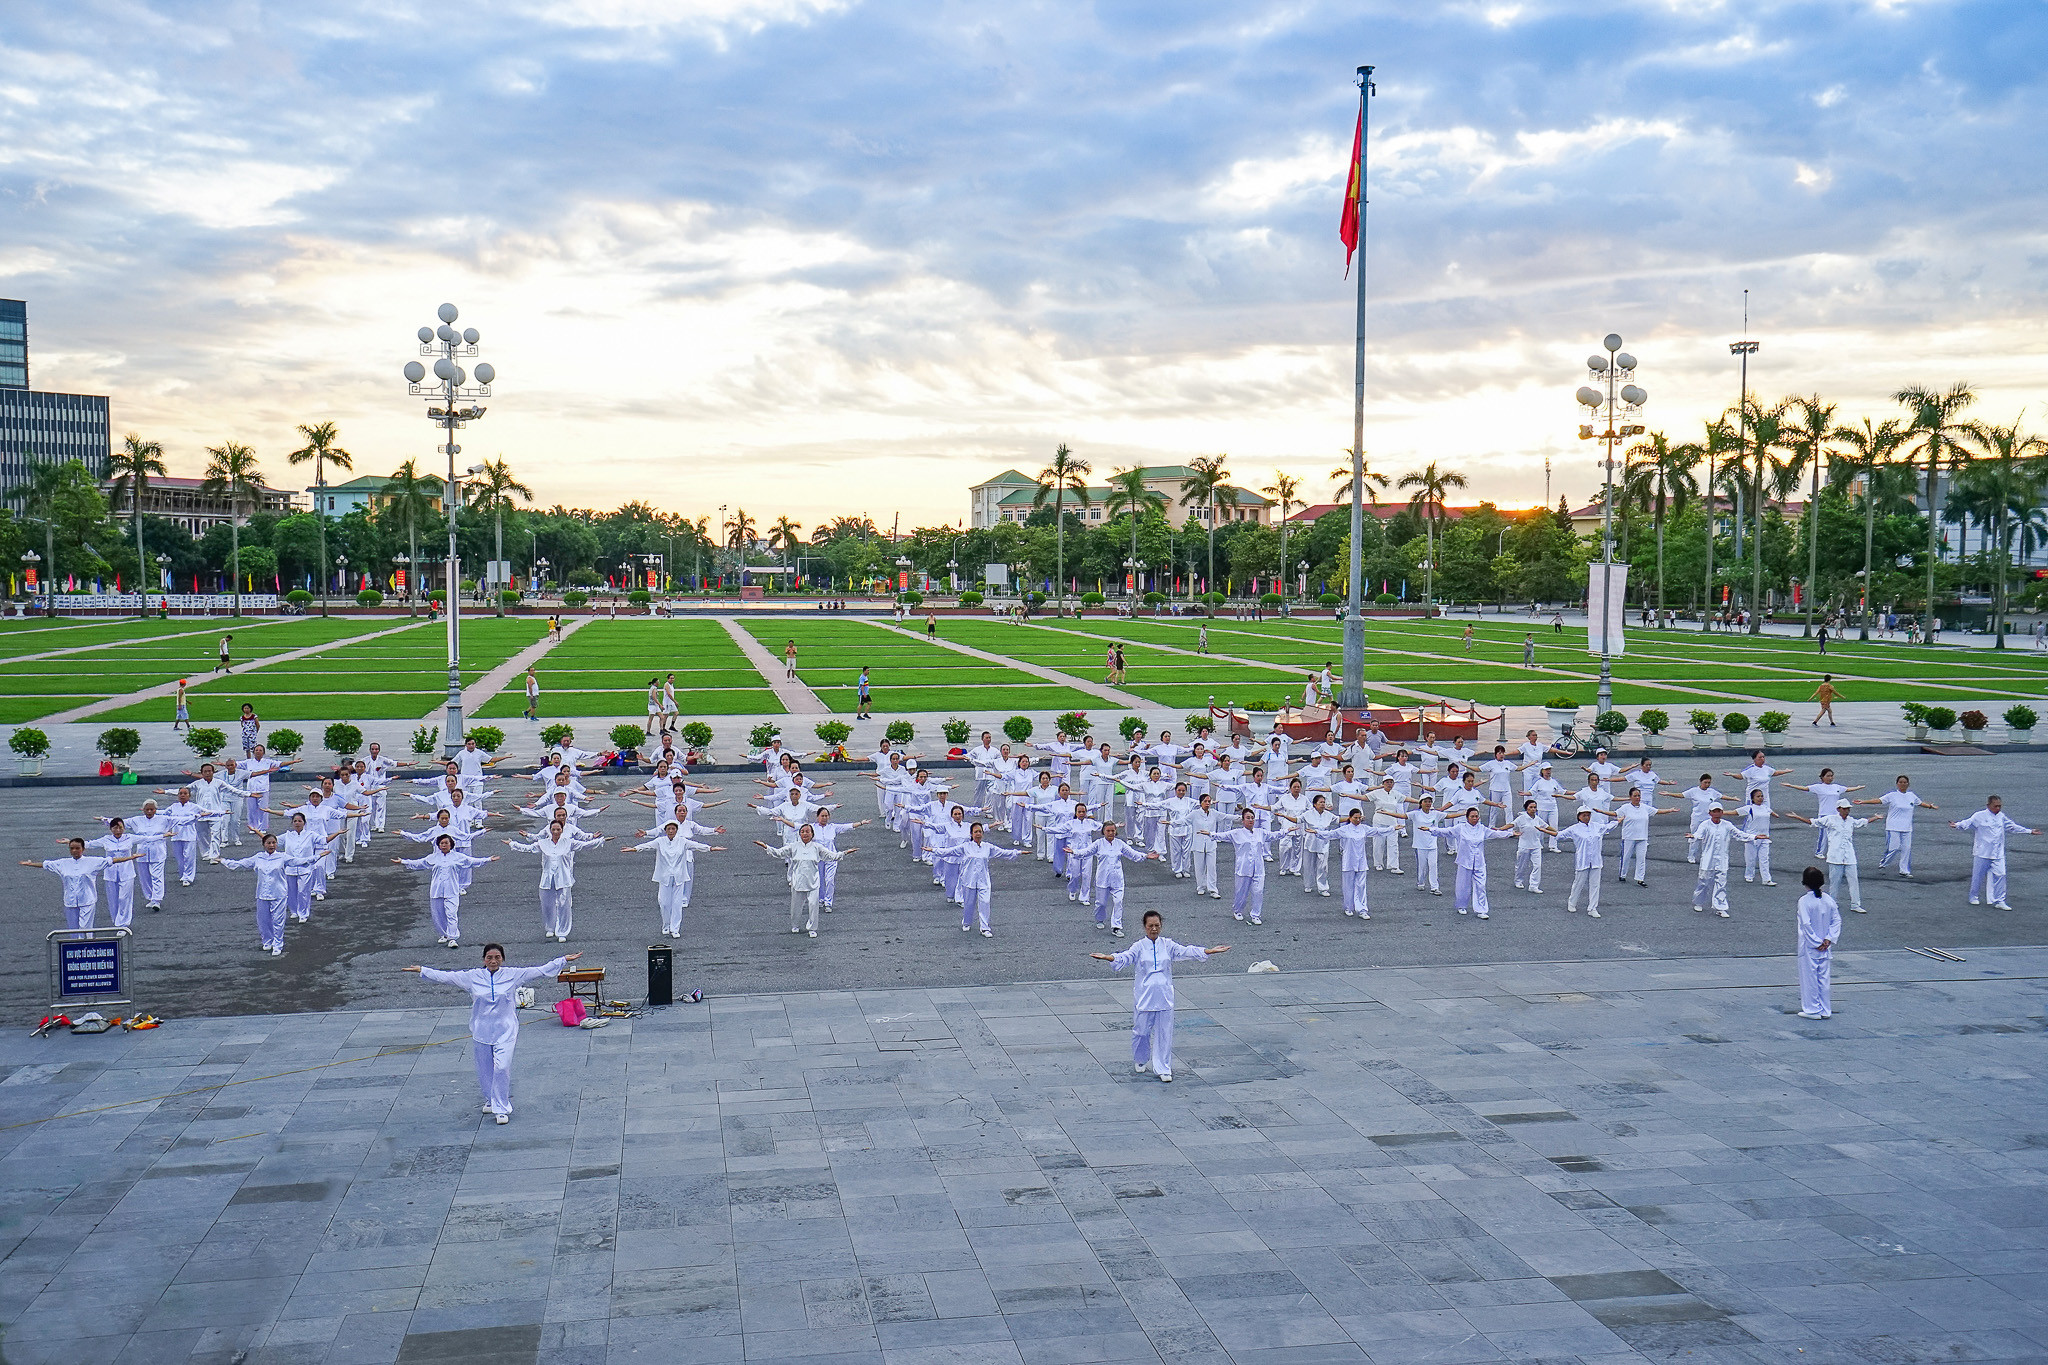 Quảng trường Hồ Chí Minh - điểm du lịch không thể bỏ lỡ ở Thành Vinh.  Ảnh: Hồ Đình Chiến